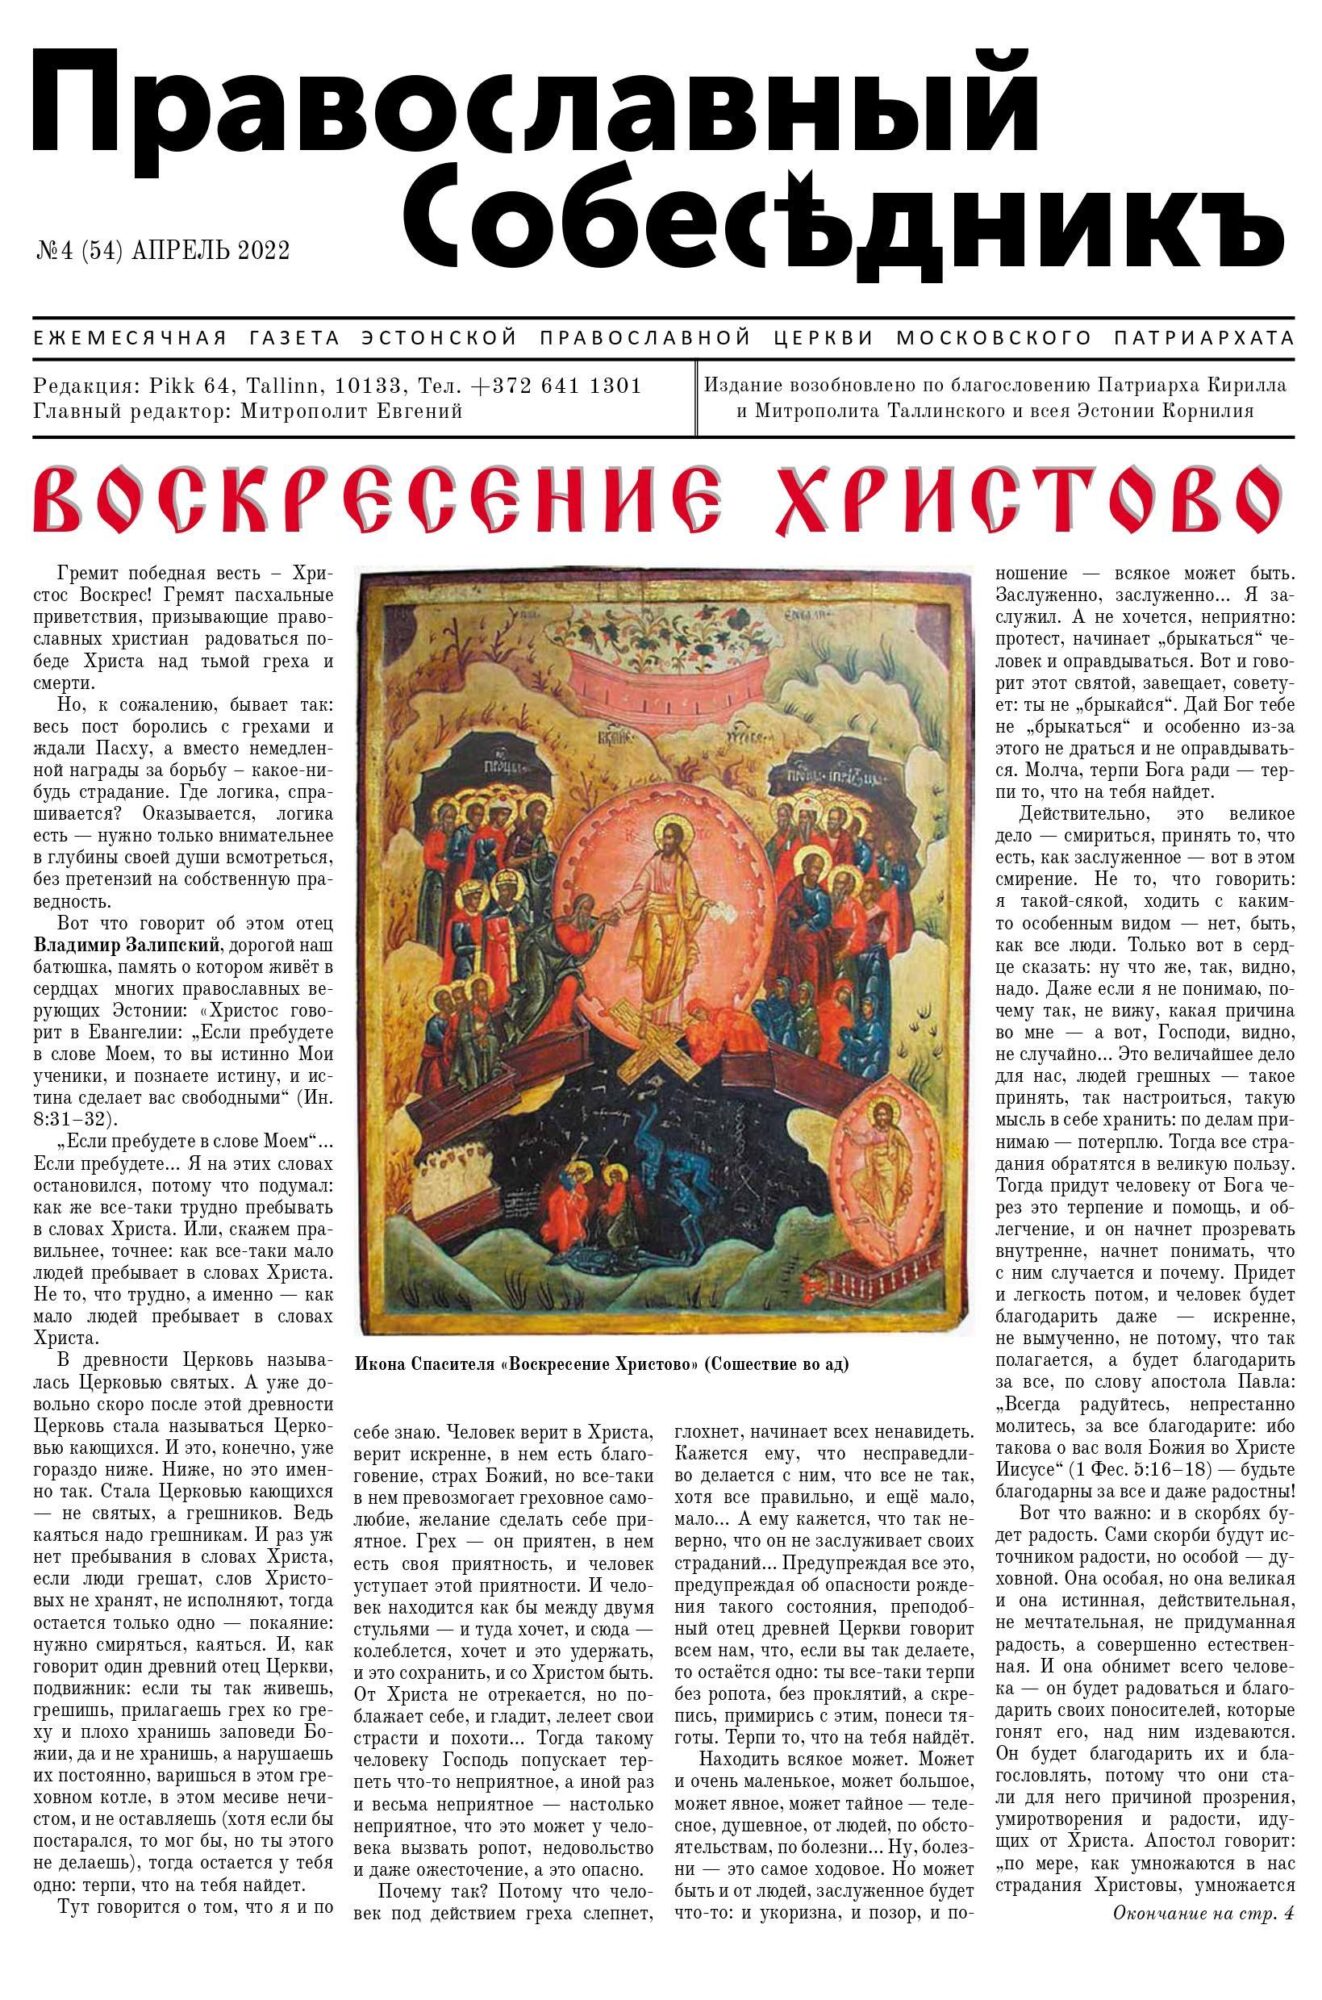 Православный Собеседник, апрель 2022. Обложка